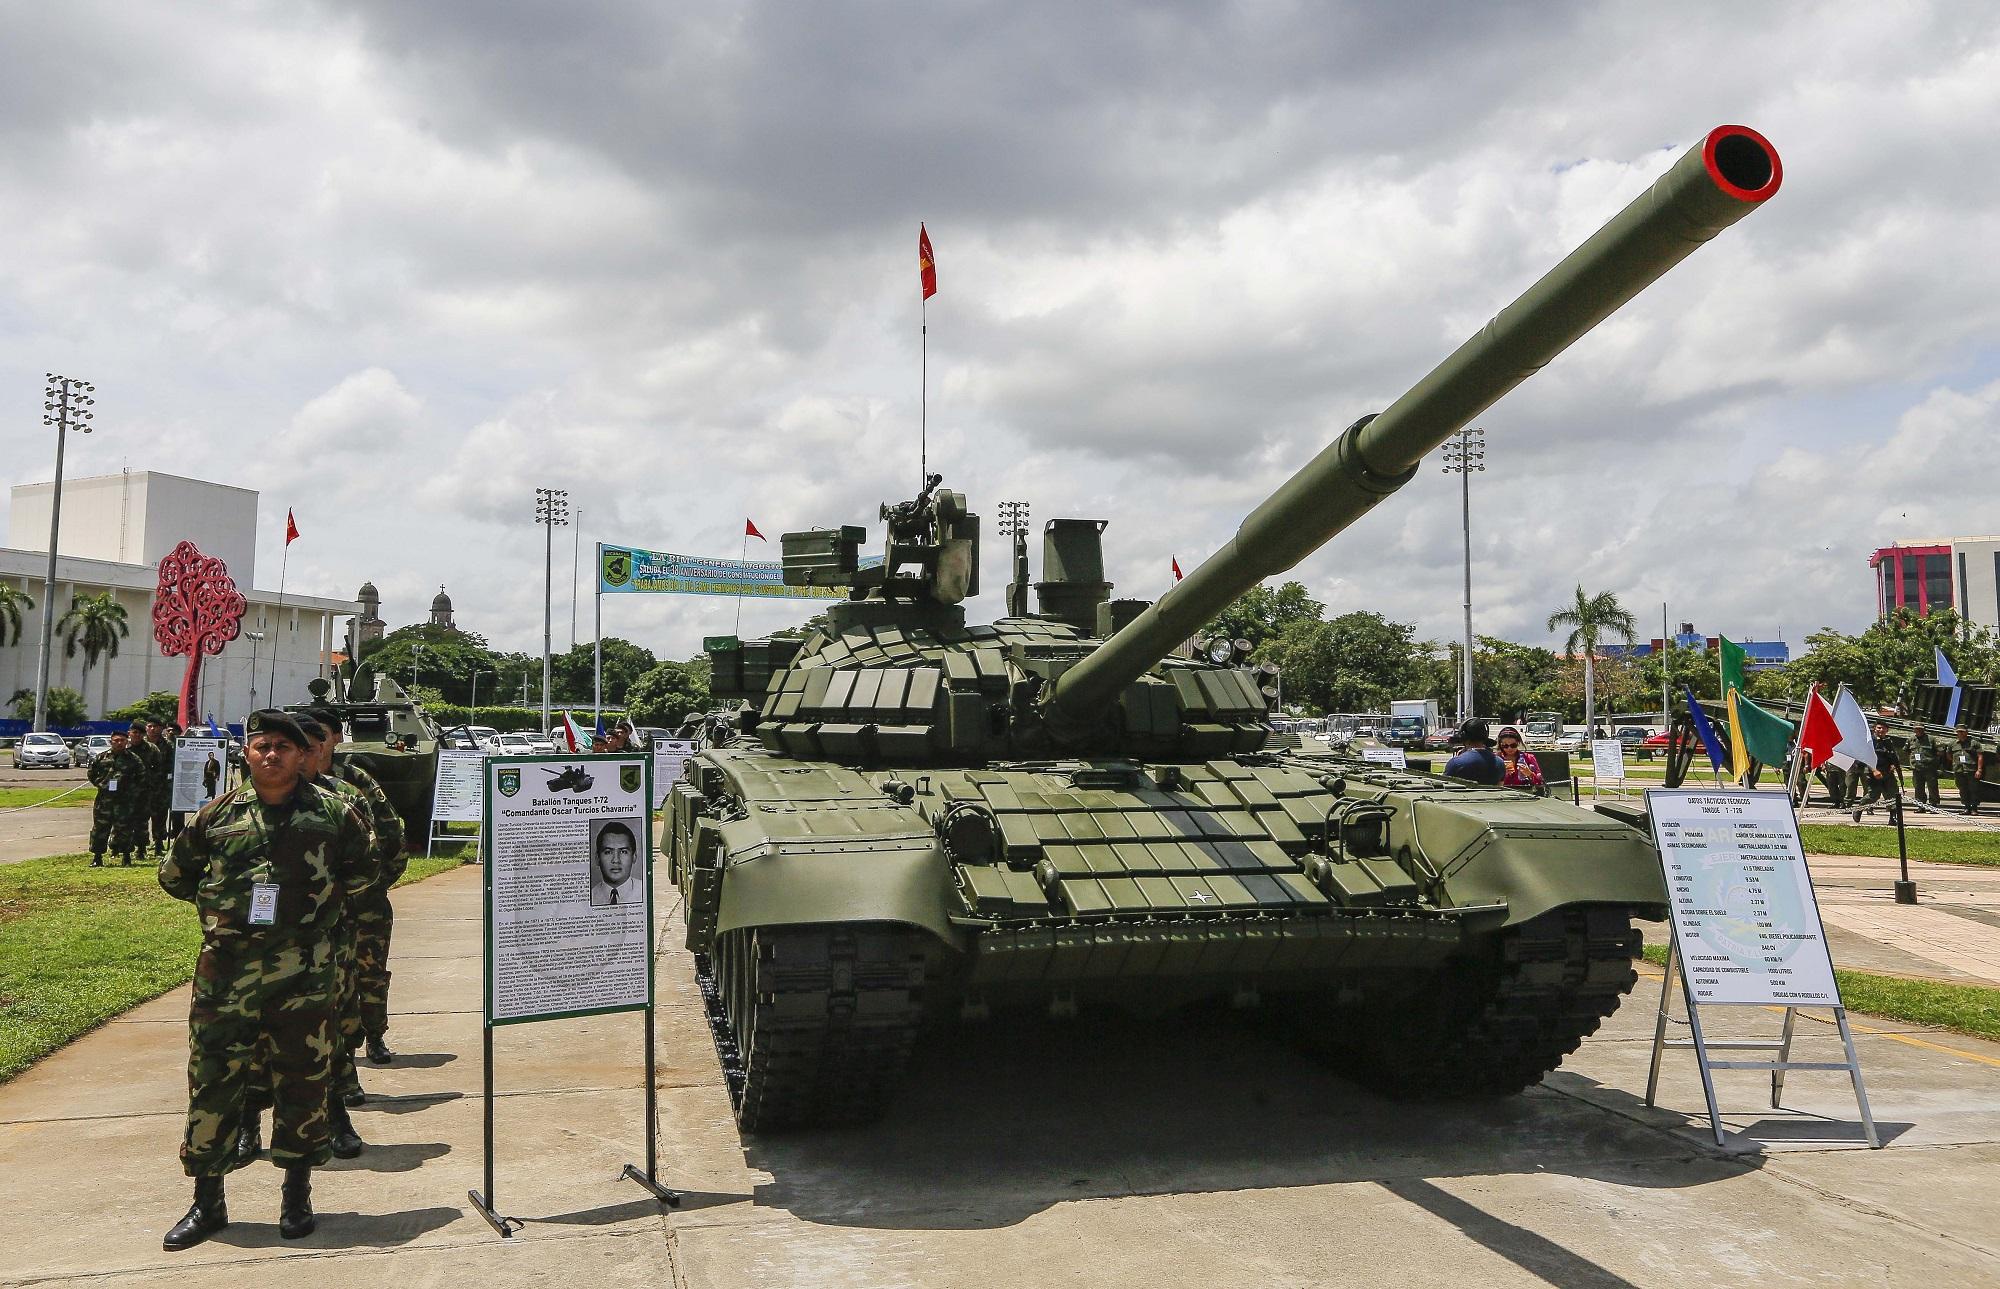 Exhibido en una plaza de Managua, este es uno de los poderosos tanques T-72 adquiridos por Nicaragua a Rusia. Trascendió que son 50 los comprados por un monto que ronda los 80 millones de dólares. Foto Inti Ocón (AFP).